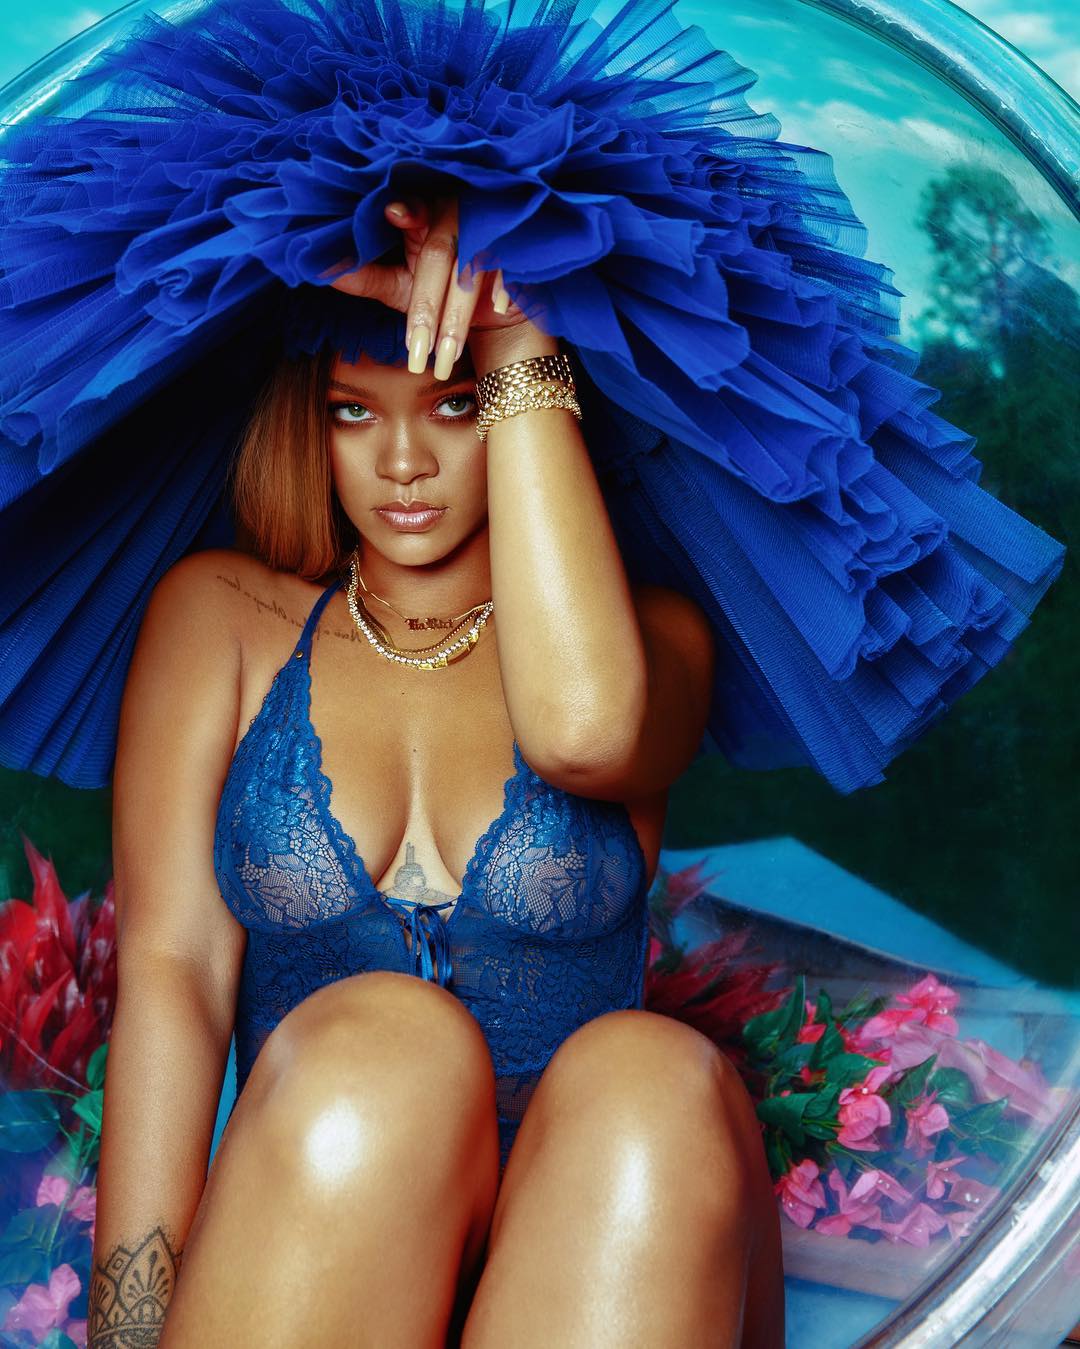 hình ảnh nóng bỏng của nữ ca sĩ đình đám Rihanna ảnh 2